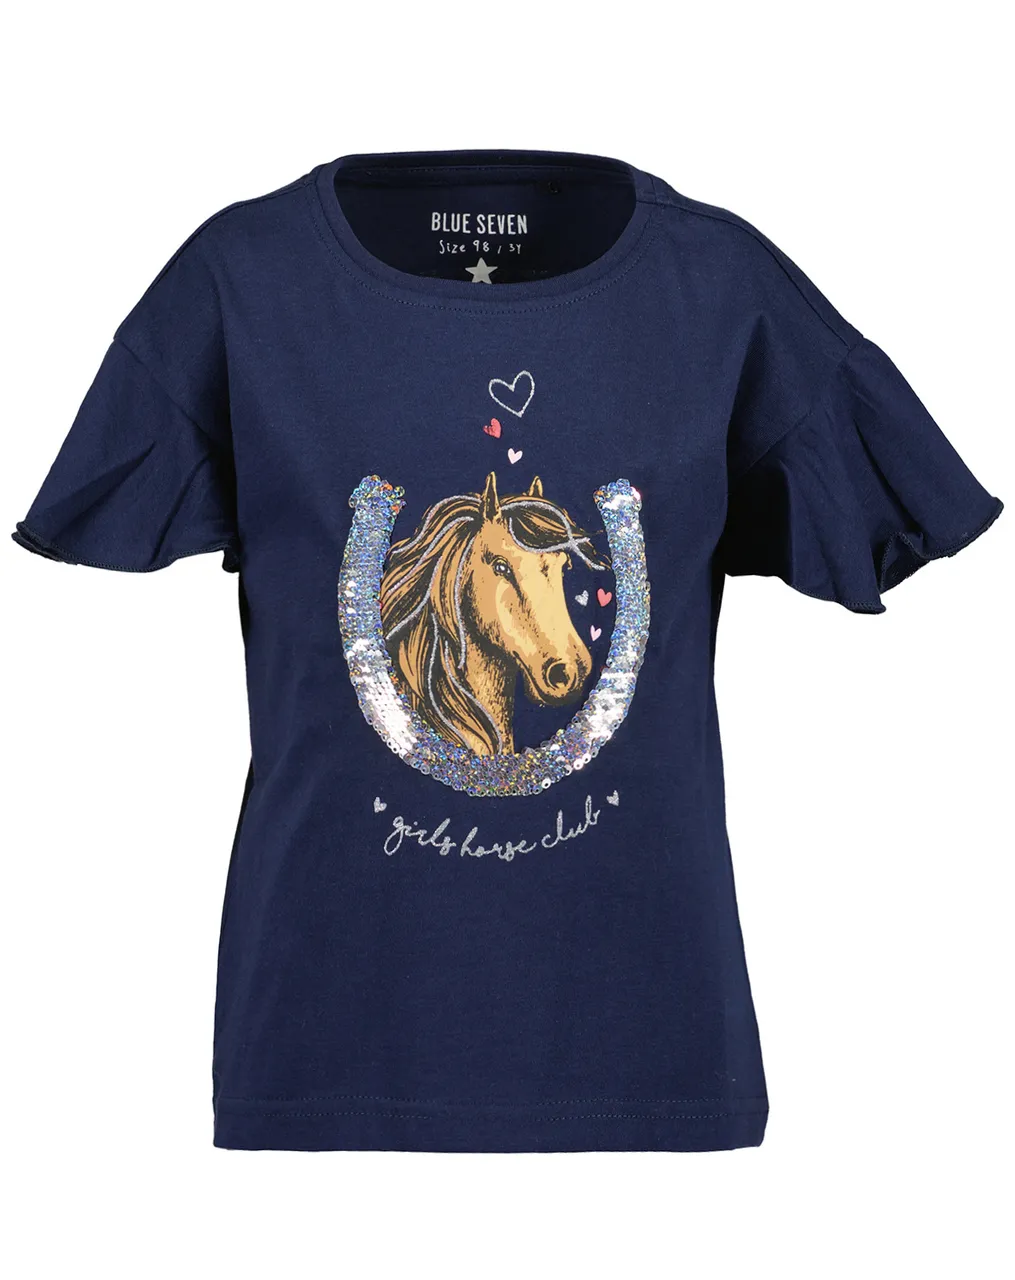 T-Shirt GIRLS HORSE CLUB mit Wendepailletten in blau